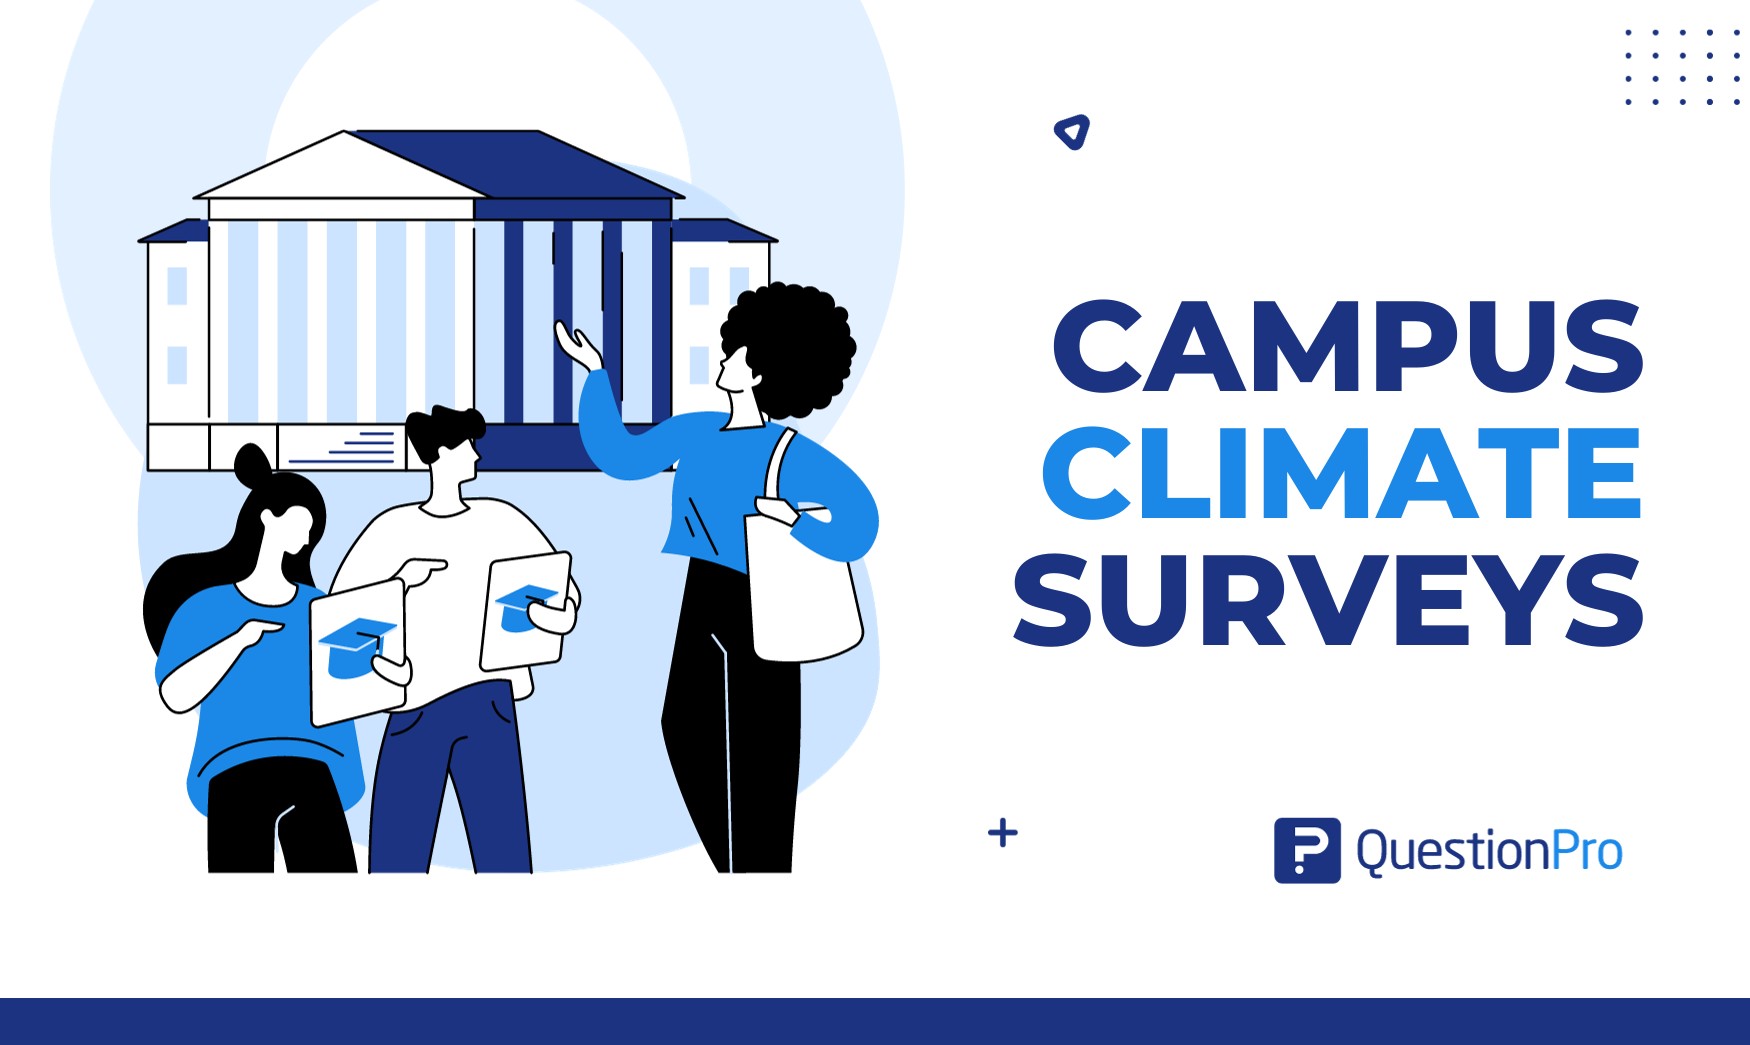 Campus climate surveys